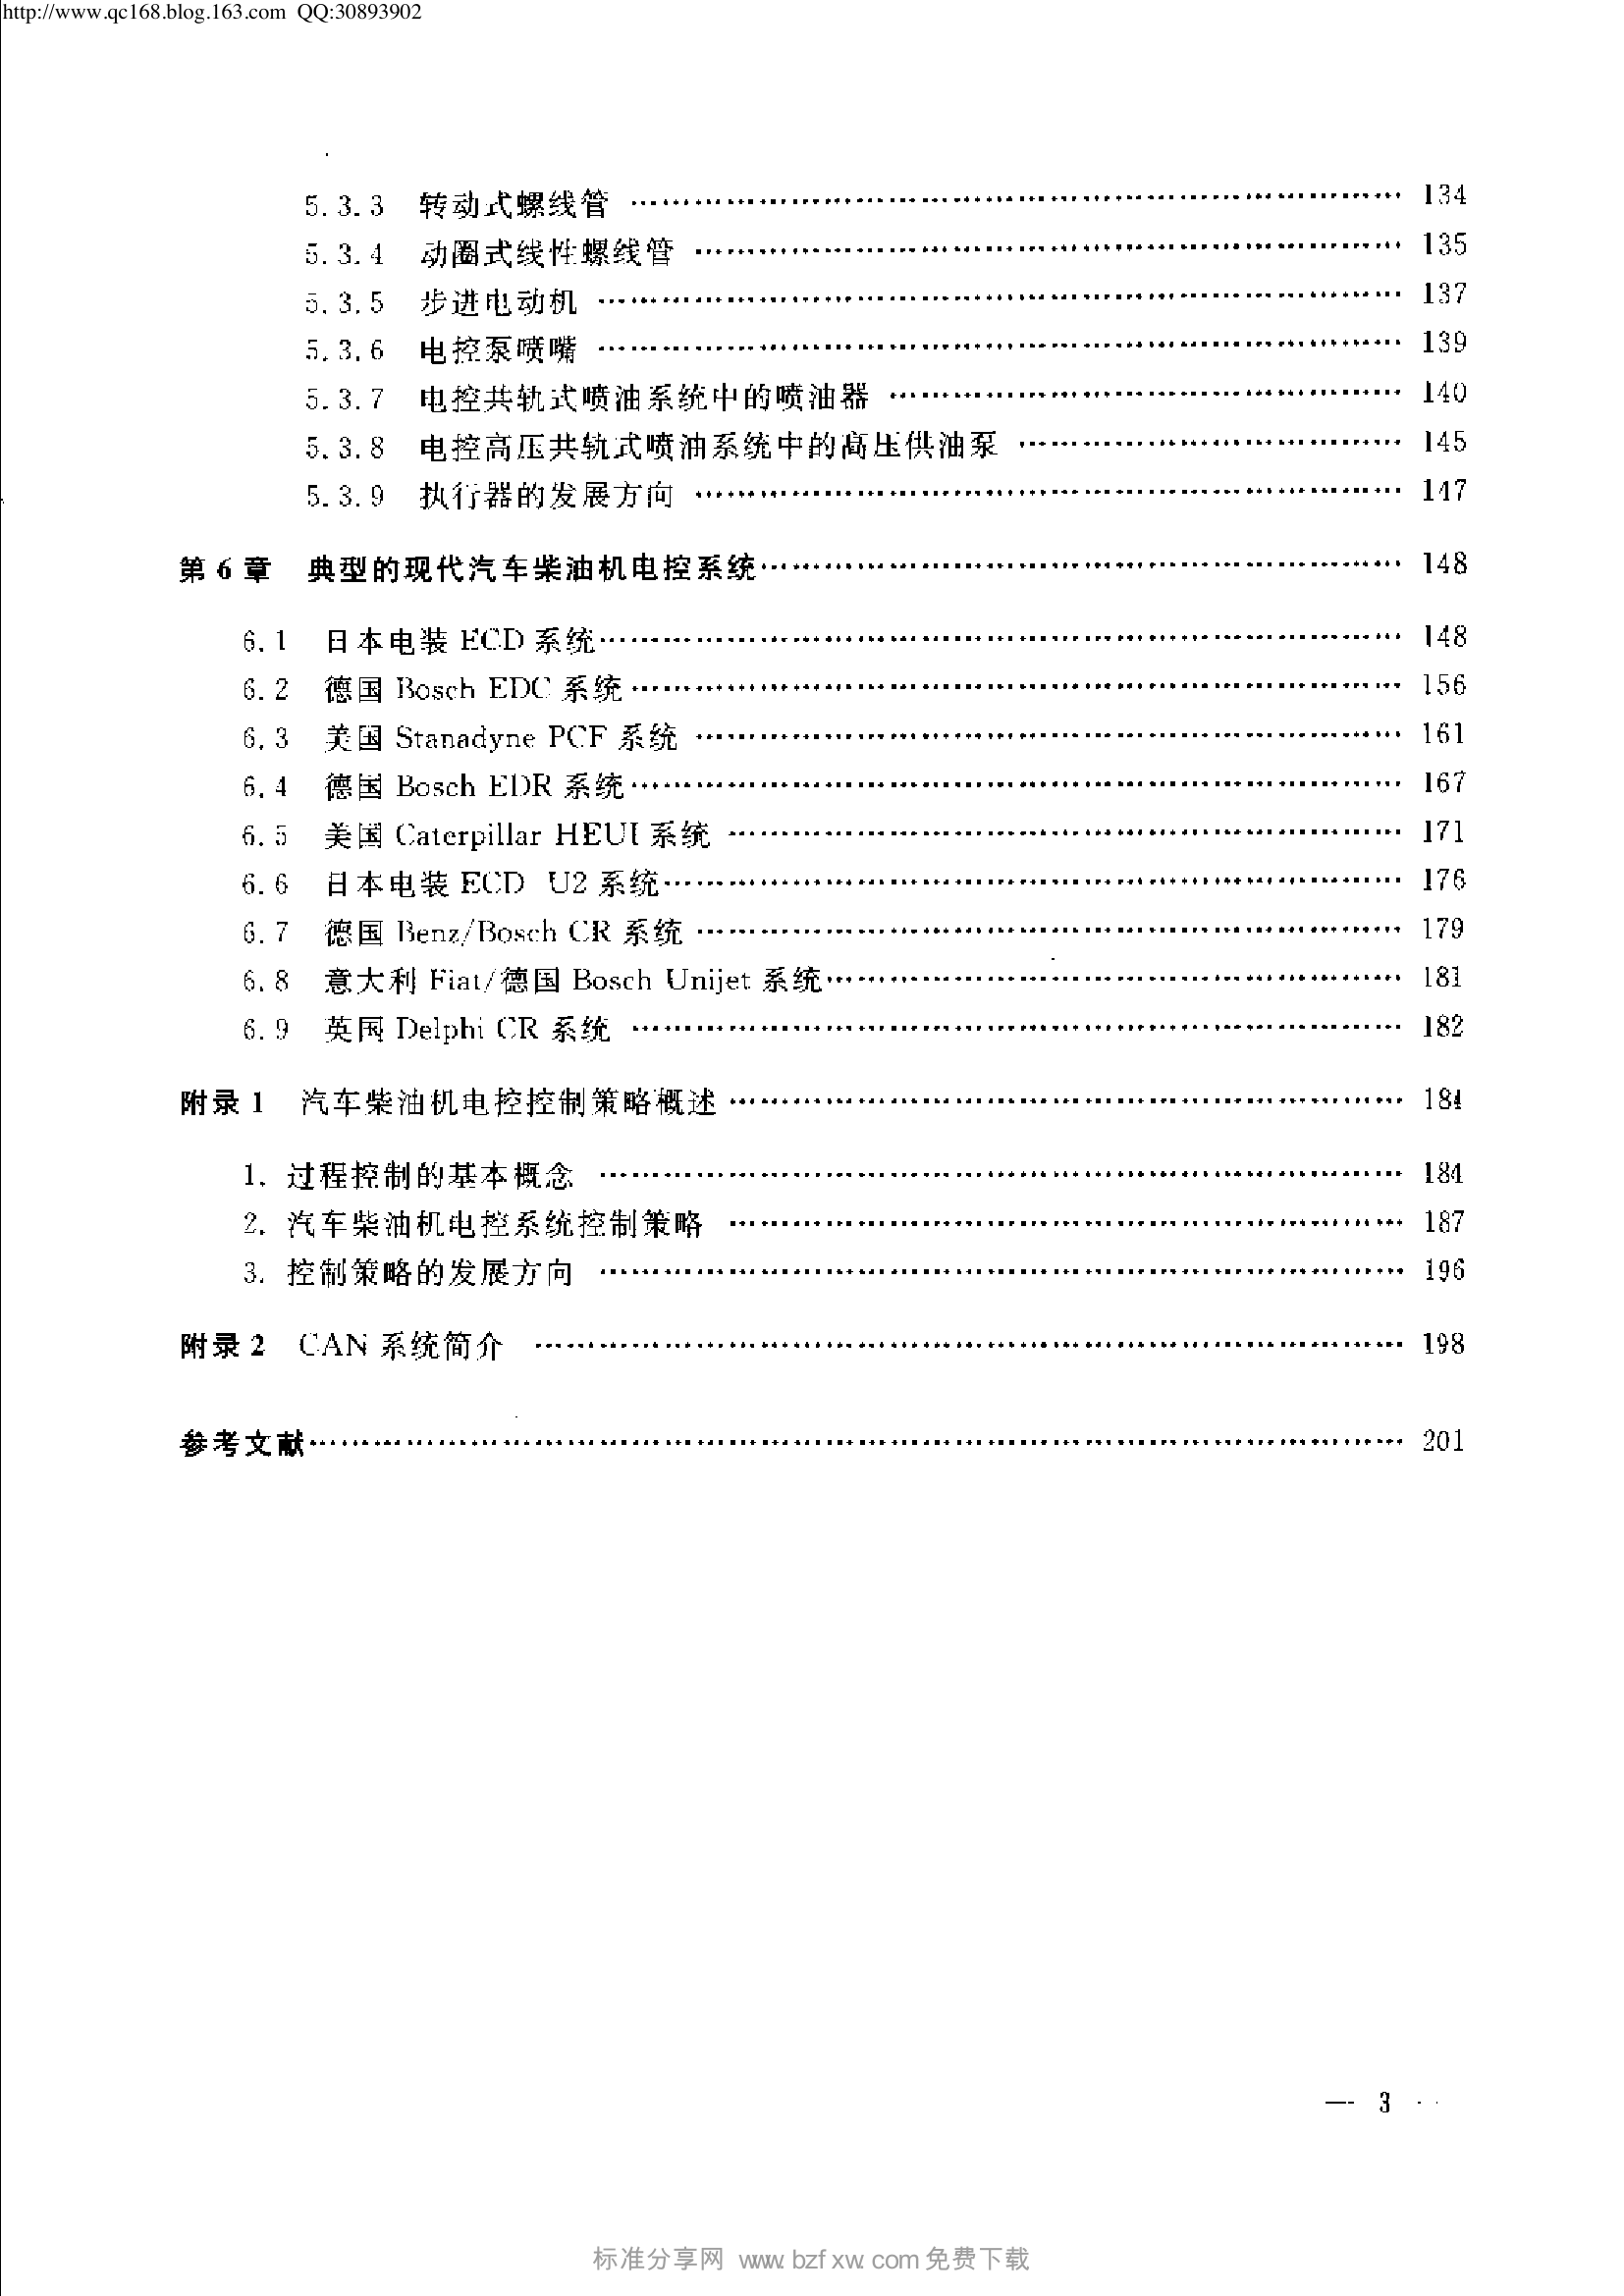 24.现代汽车柴油机电控系统.pdf-第6页.png